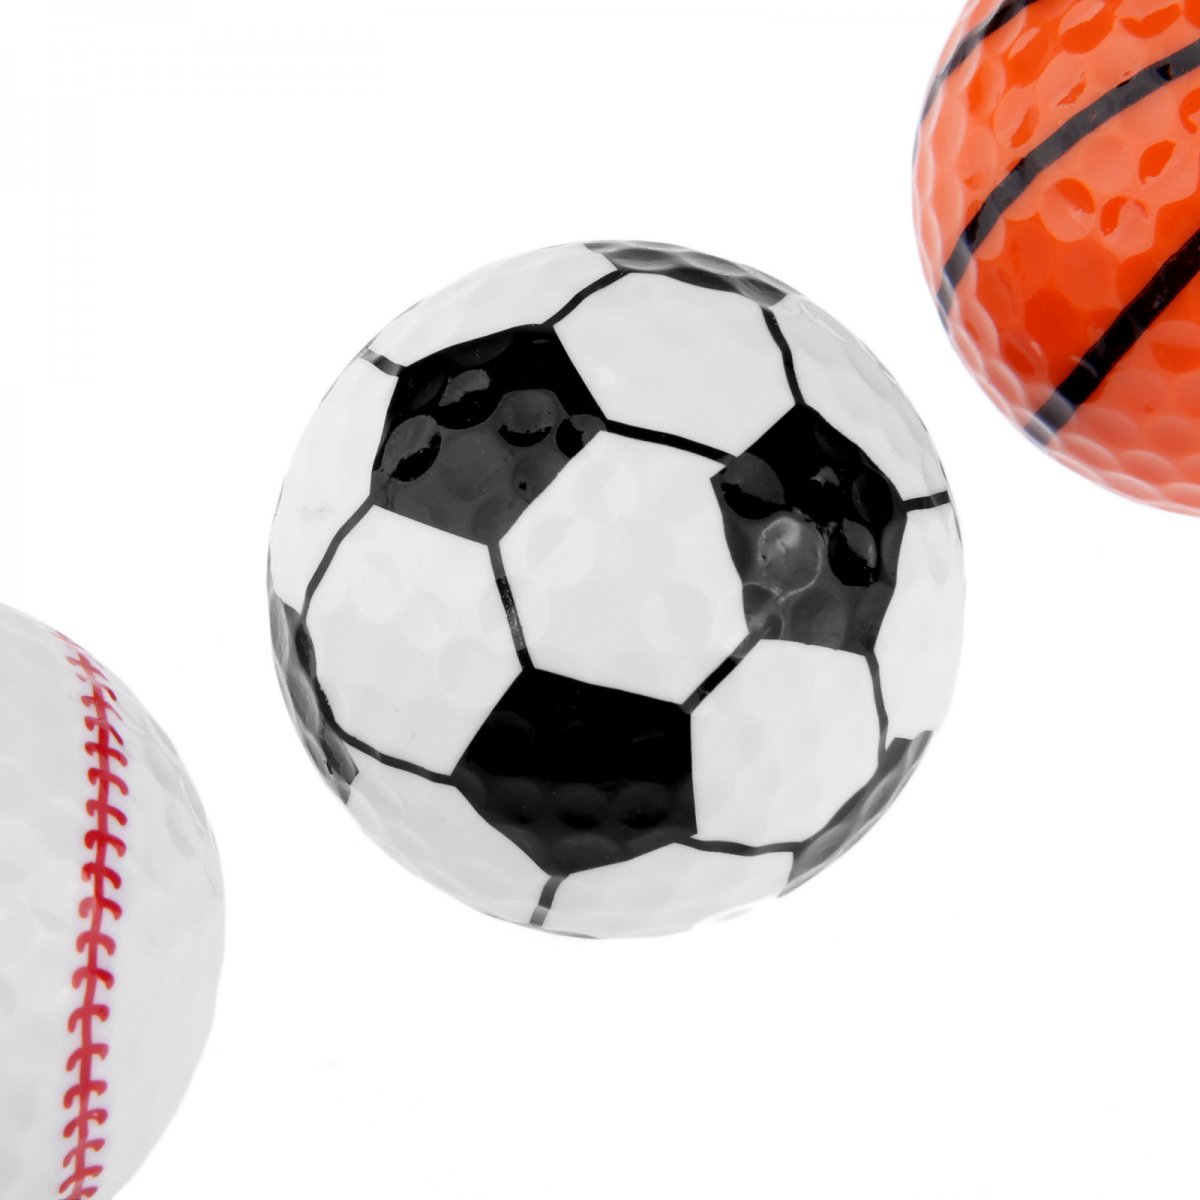 Разные Размеры мячей в спорте